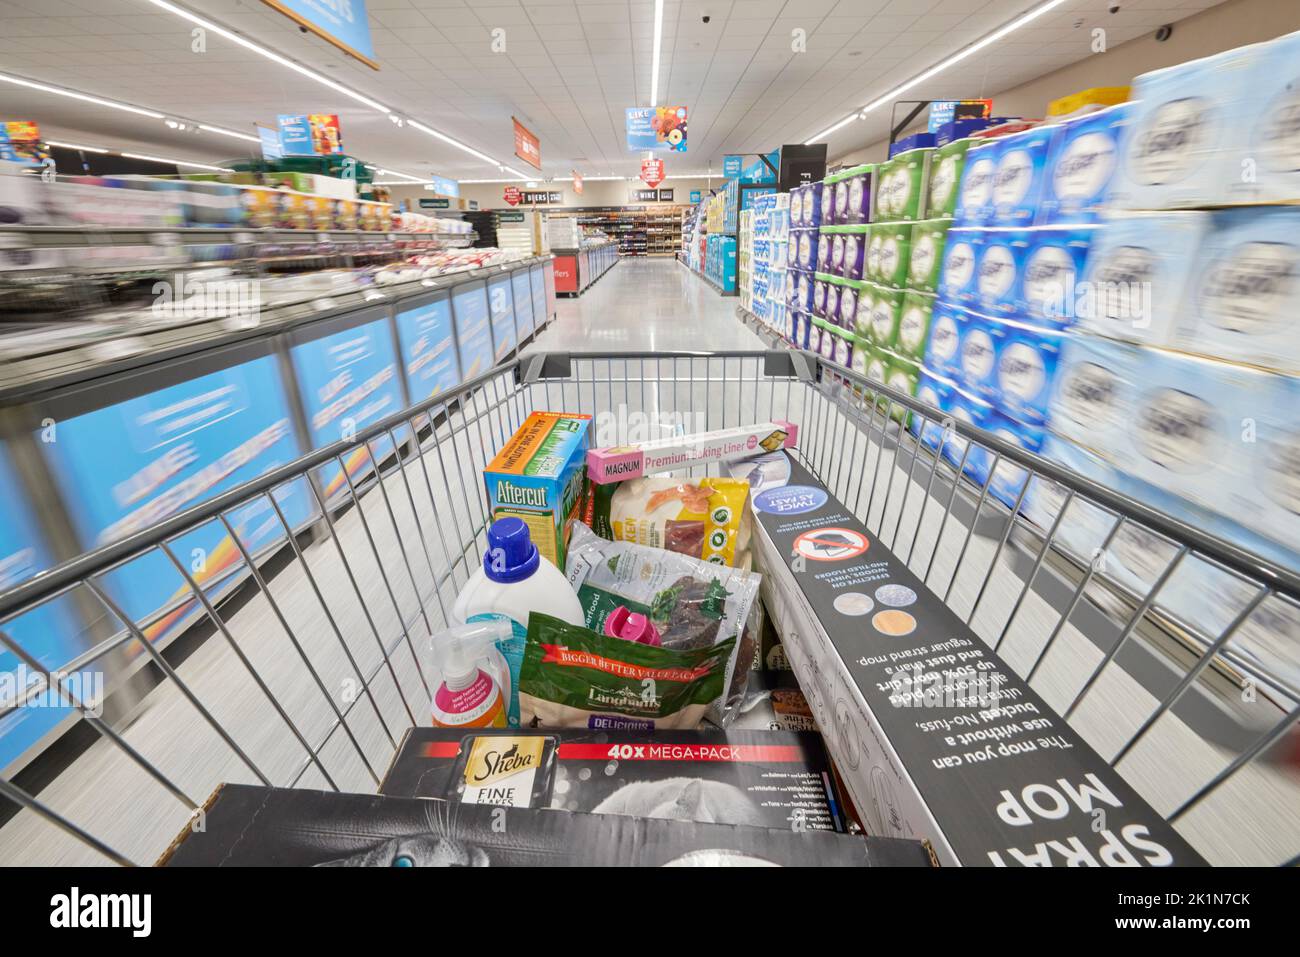 INTERNI ALDI Supermarket con carrello che si muove attraverso le navate Foto Stock